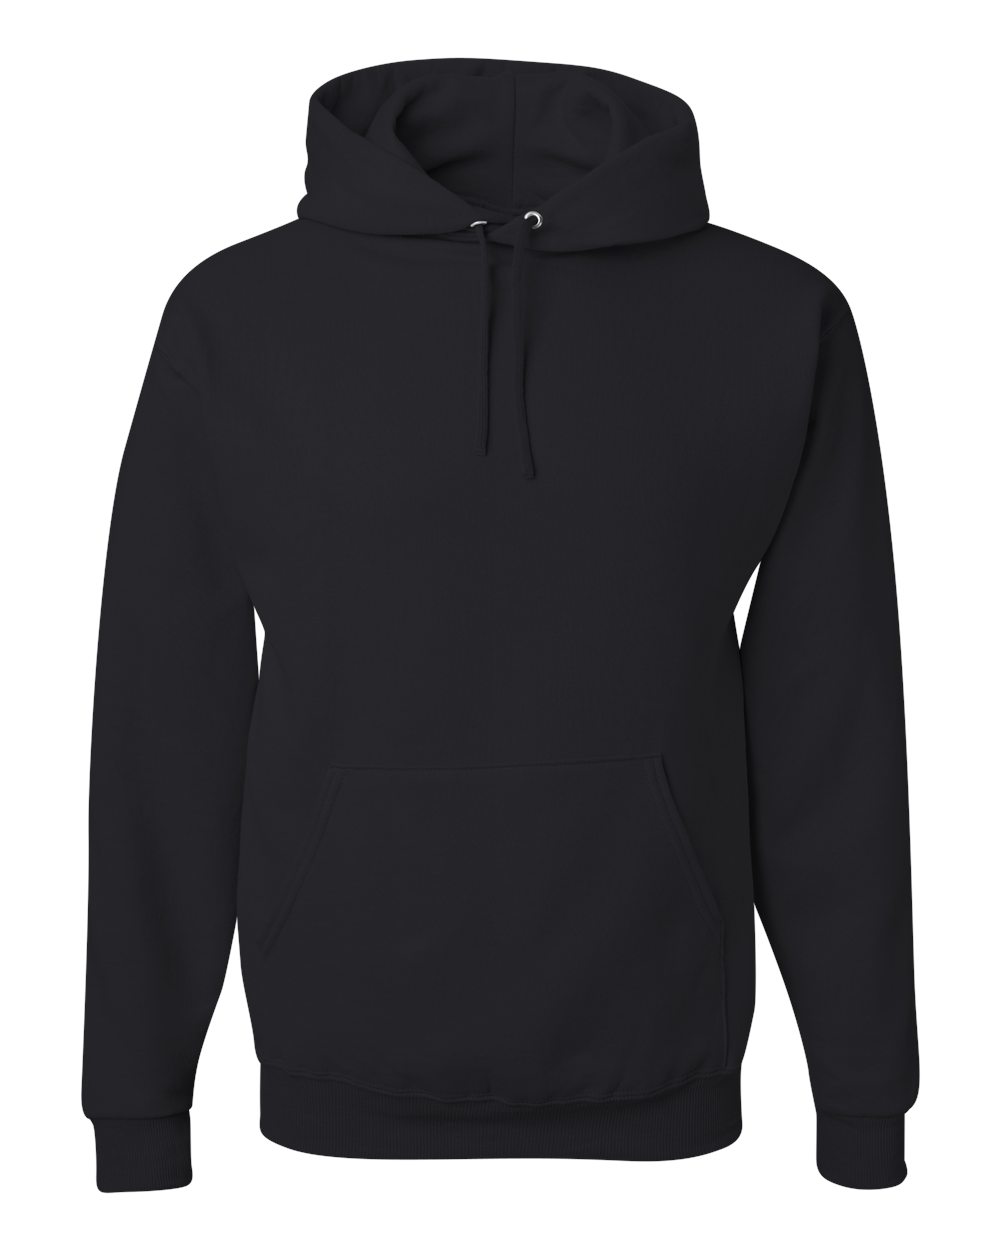 Jerzee NuBlend hooded Sweatshirt- 996MR